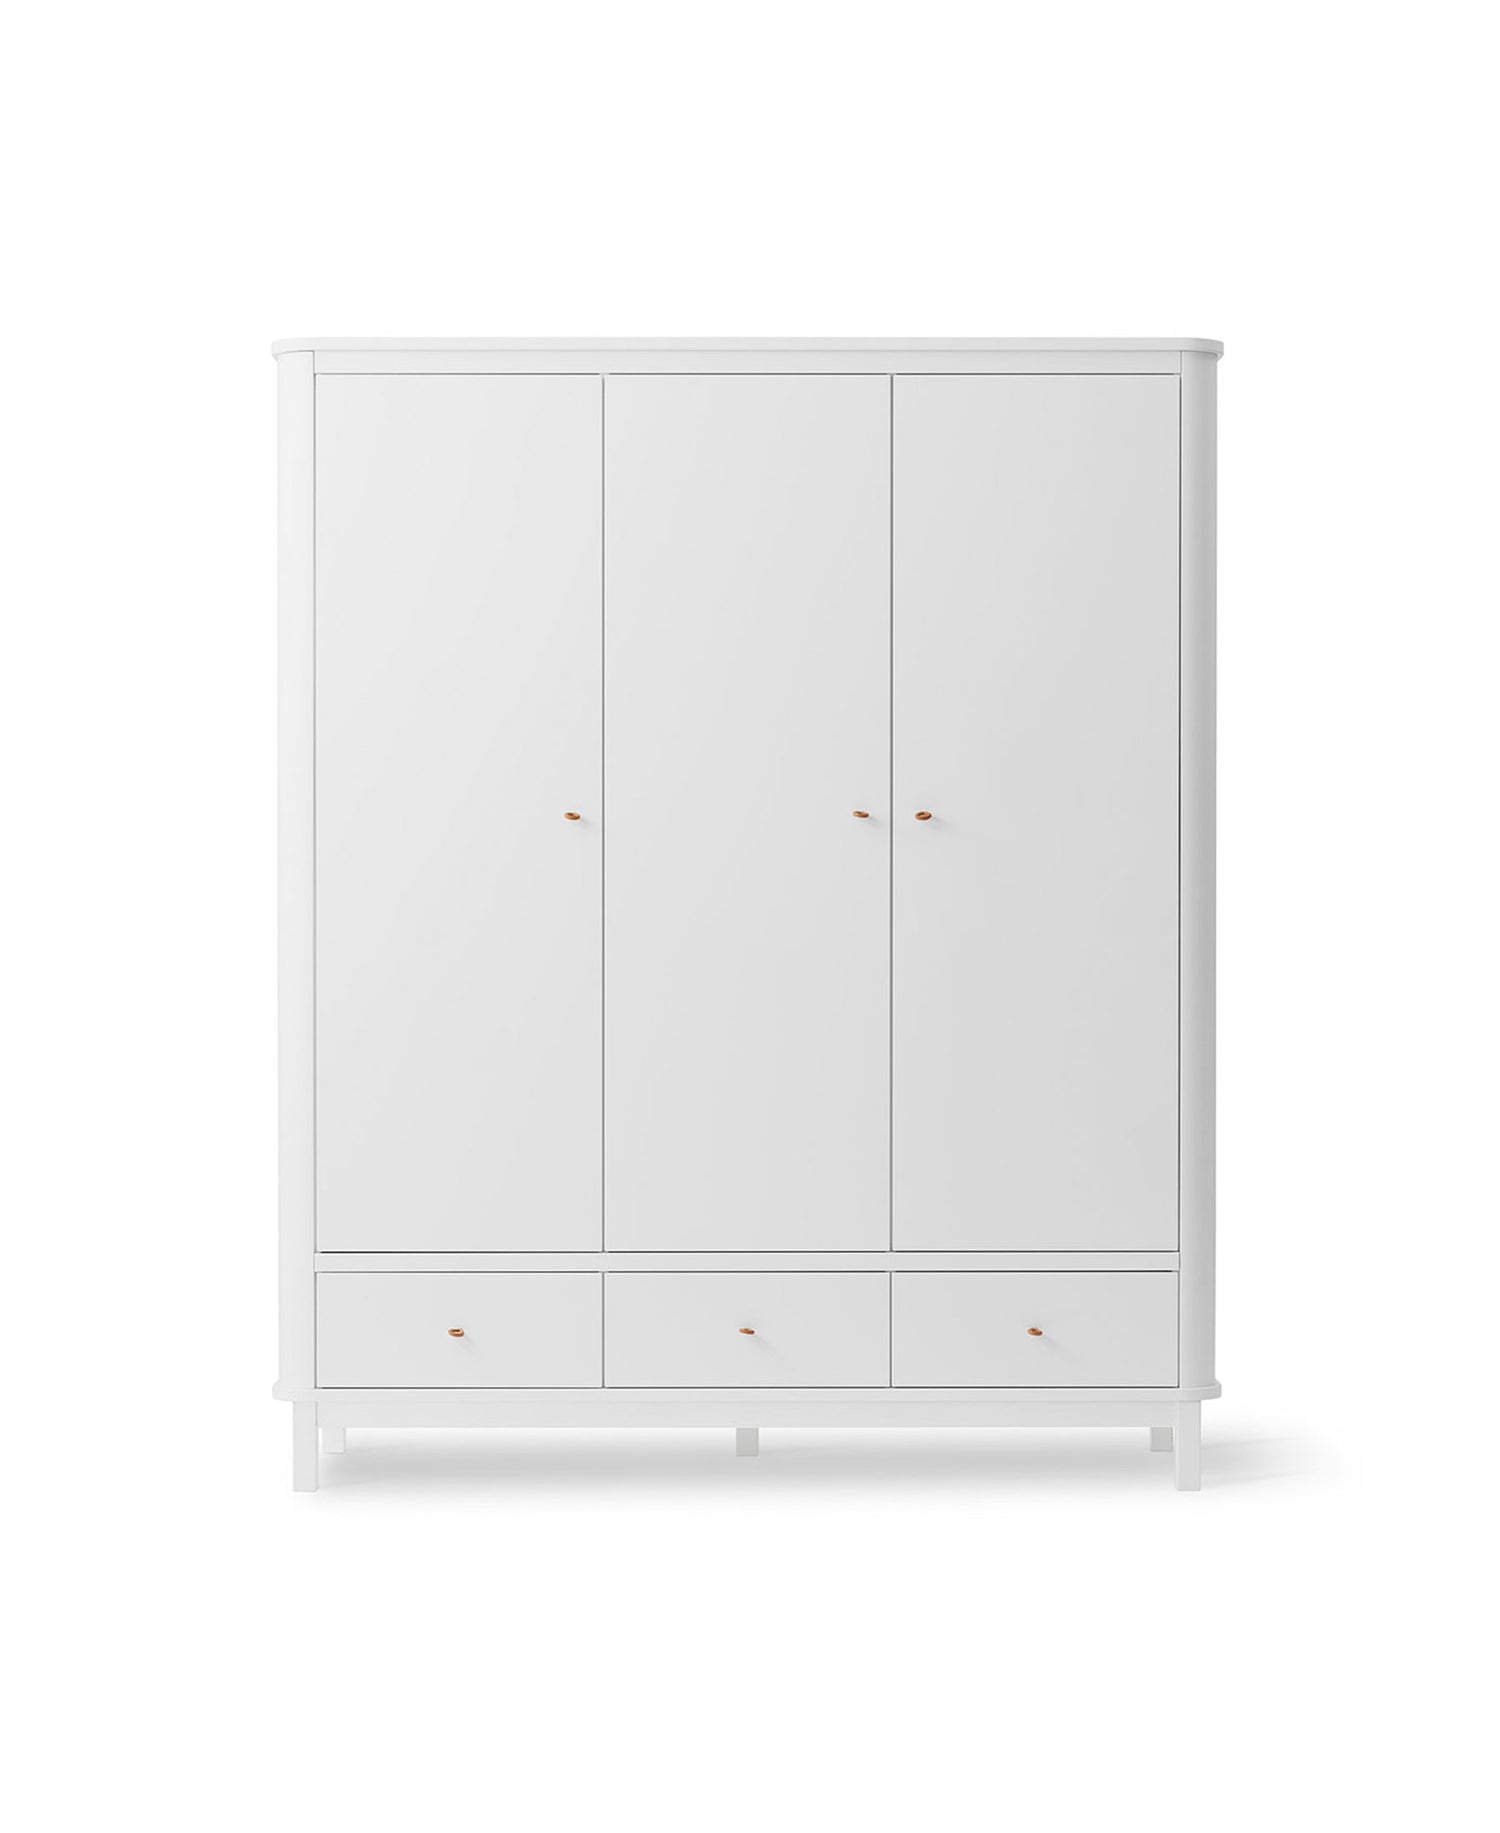 Oliver Furniture 3-deurs kledingkast in wit. 